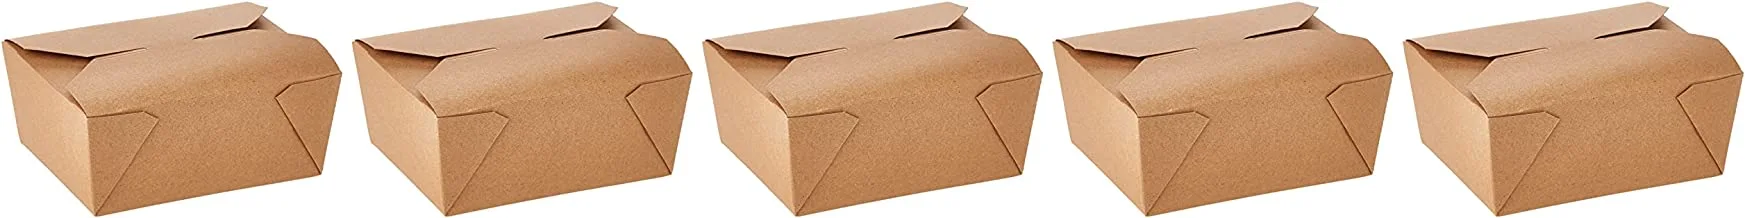 Hotpack Kraft Pe Take Away Box 32Oz - 5 Pieces